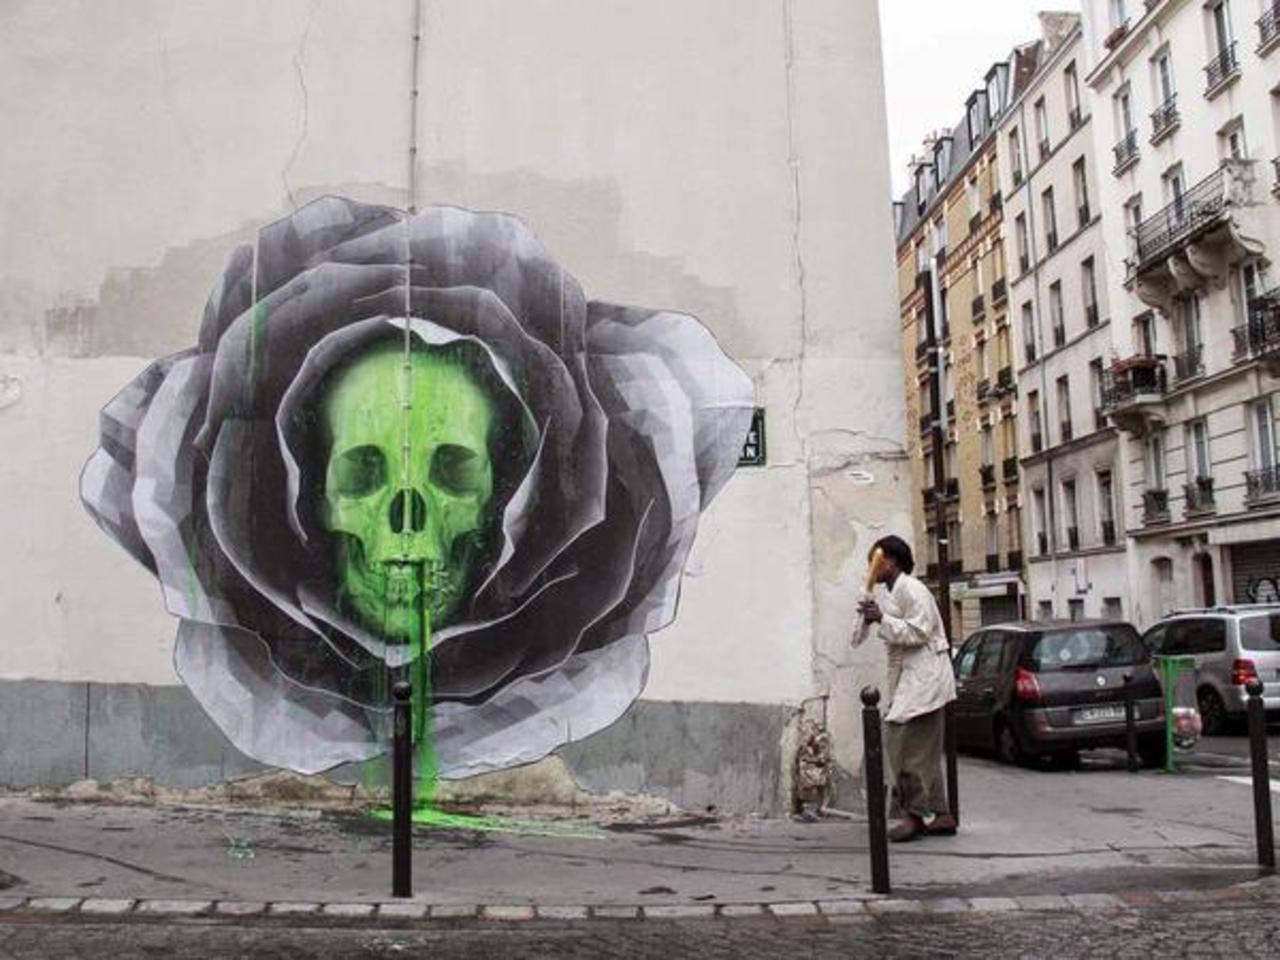 Artista: Ludo 
París, Francia
#art #streetart #mural #graffiti http://t.co/oE9IpHLtKC